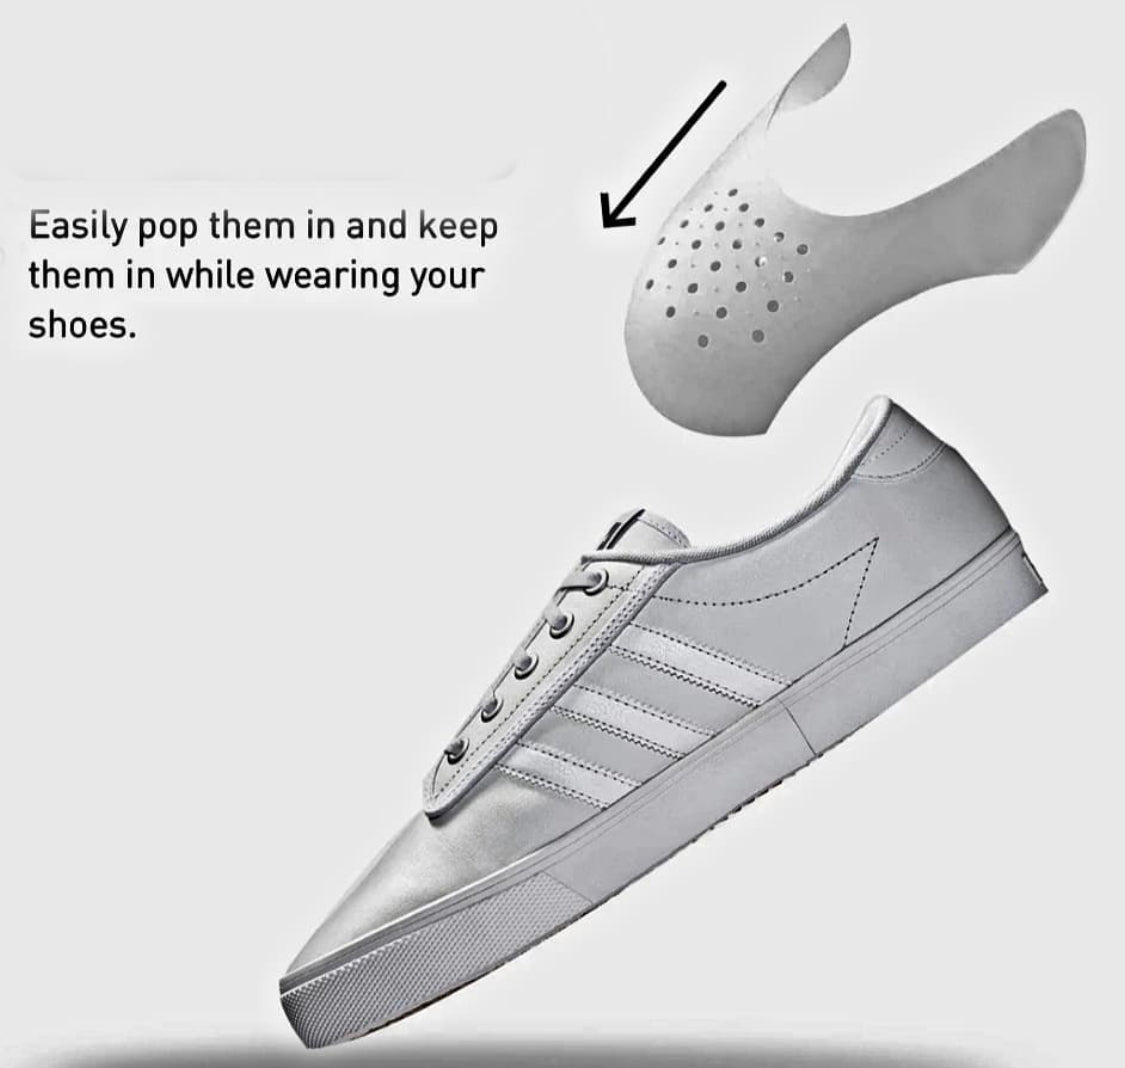 Sneaker Shoe Shields